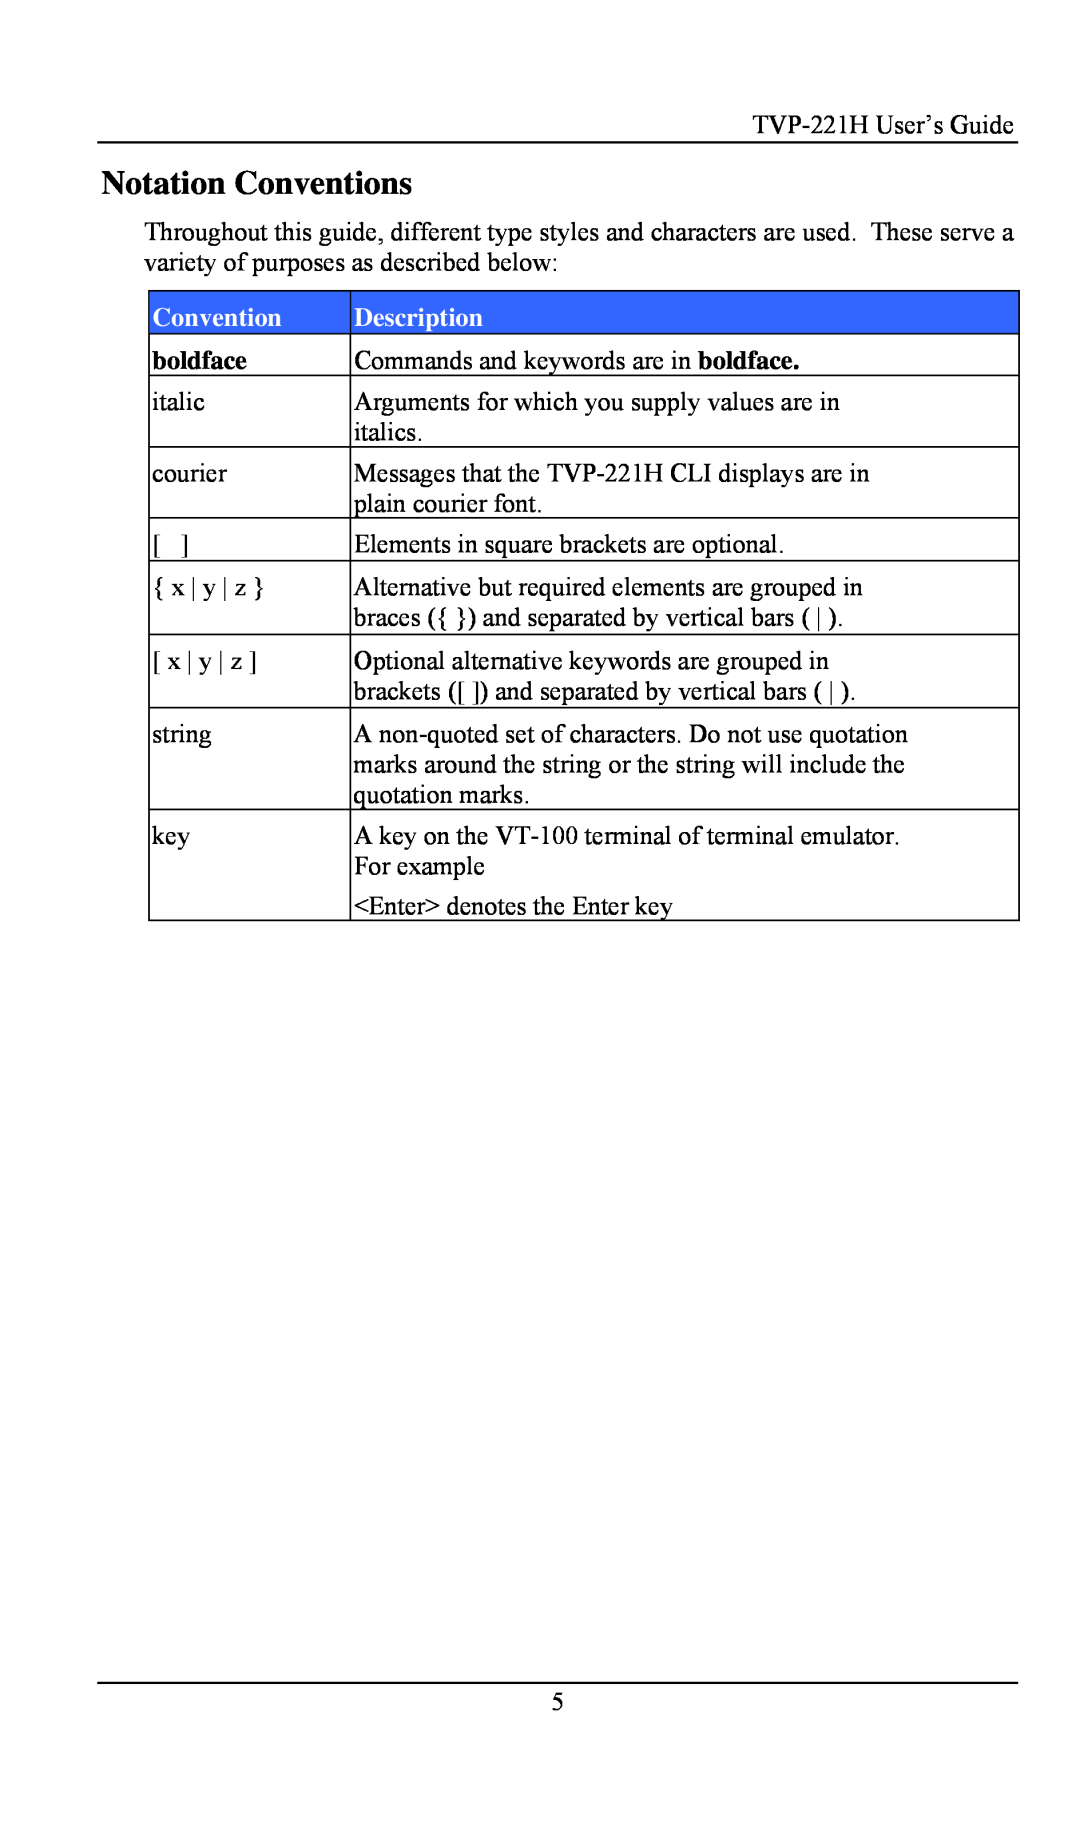 TRENDnet VoIP Gateway, TVP- 221H manual Notation Conventions, Description, boldface 